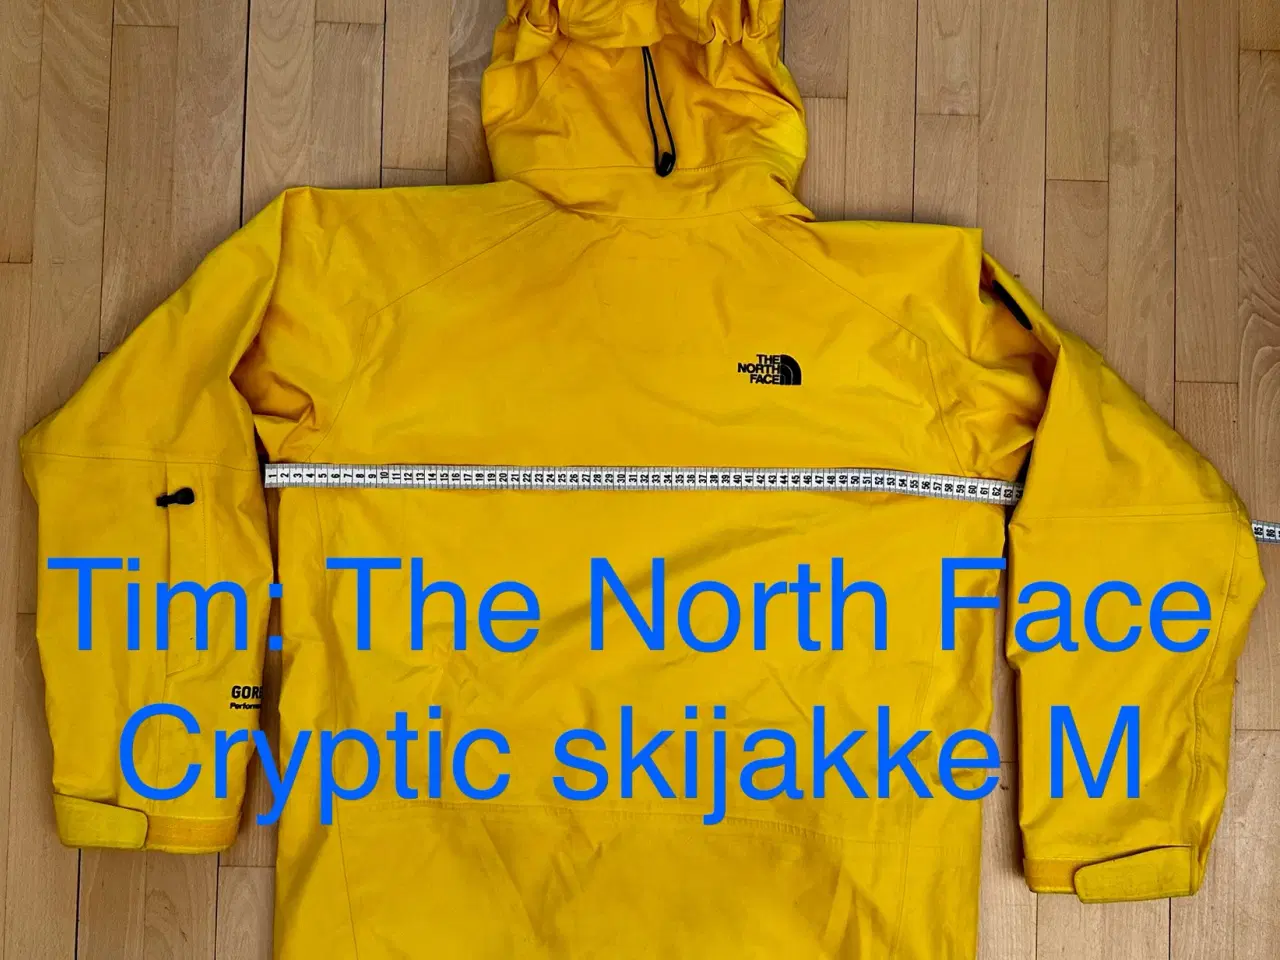 Billede 6 - The North Face Cryptic skijakke M 